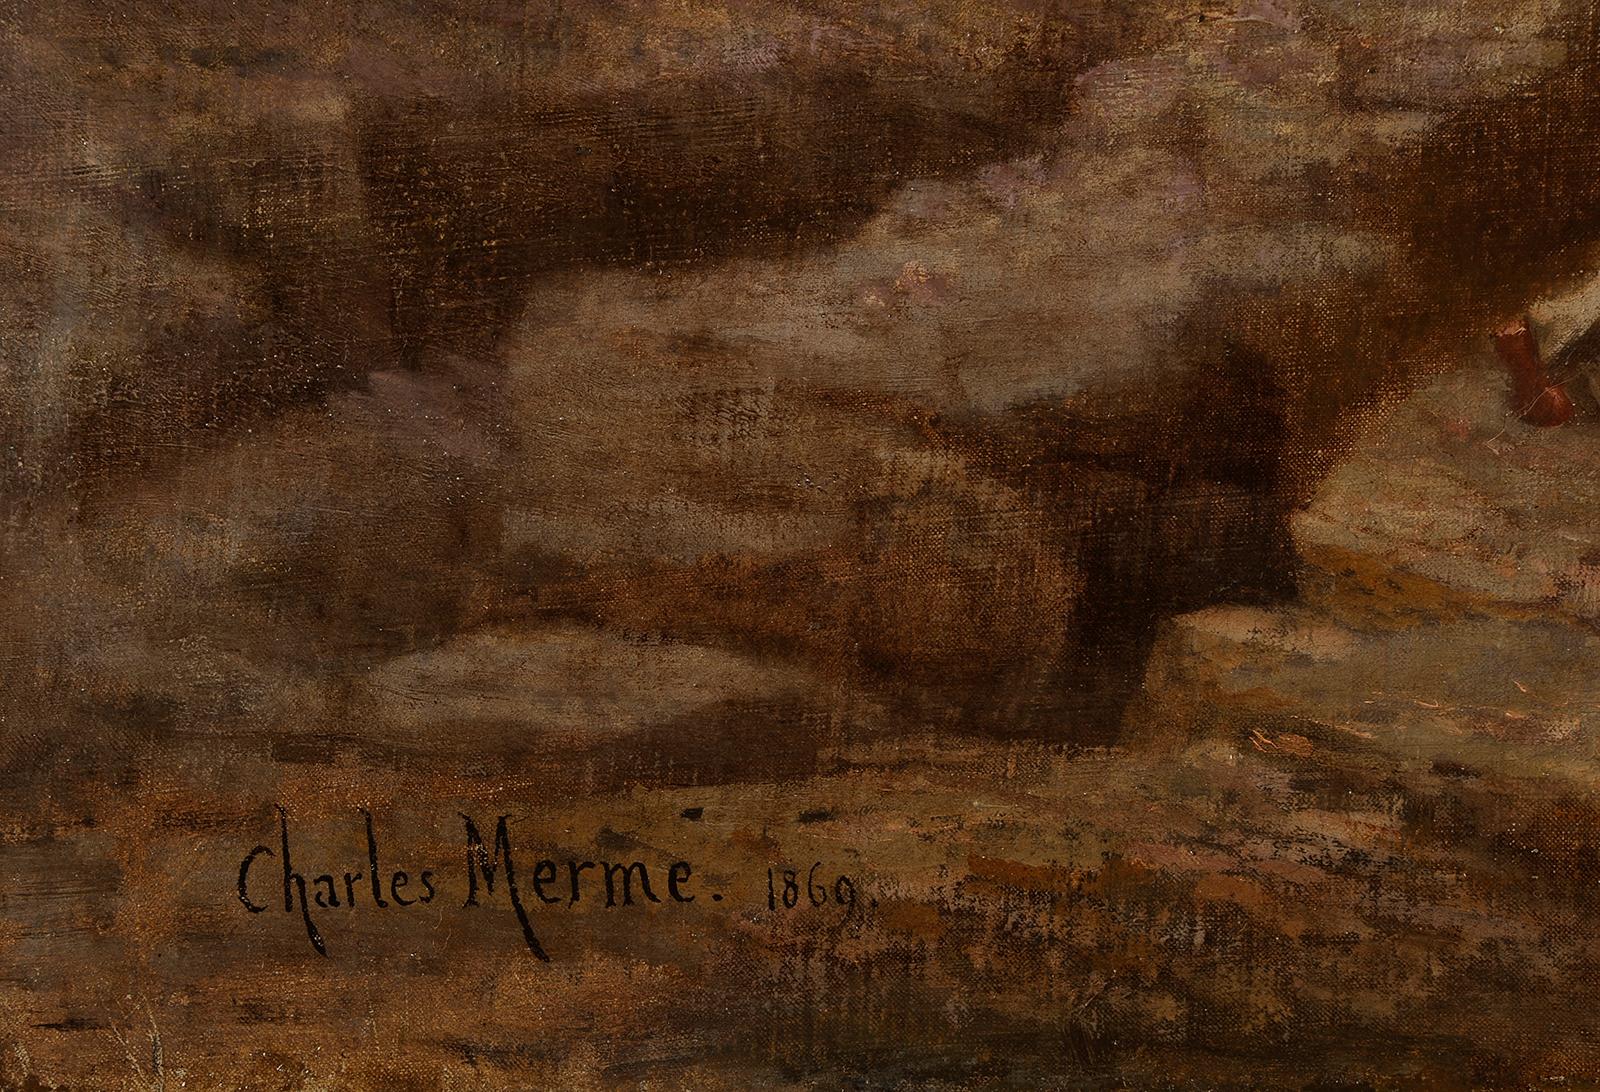 Charles Merme (1818-1869) The blessing of Coureau de Groix in Larmor Brittany - Marron Landscape Painting par Charles Mermé